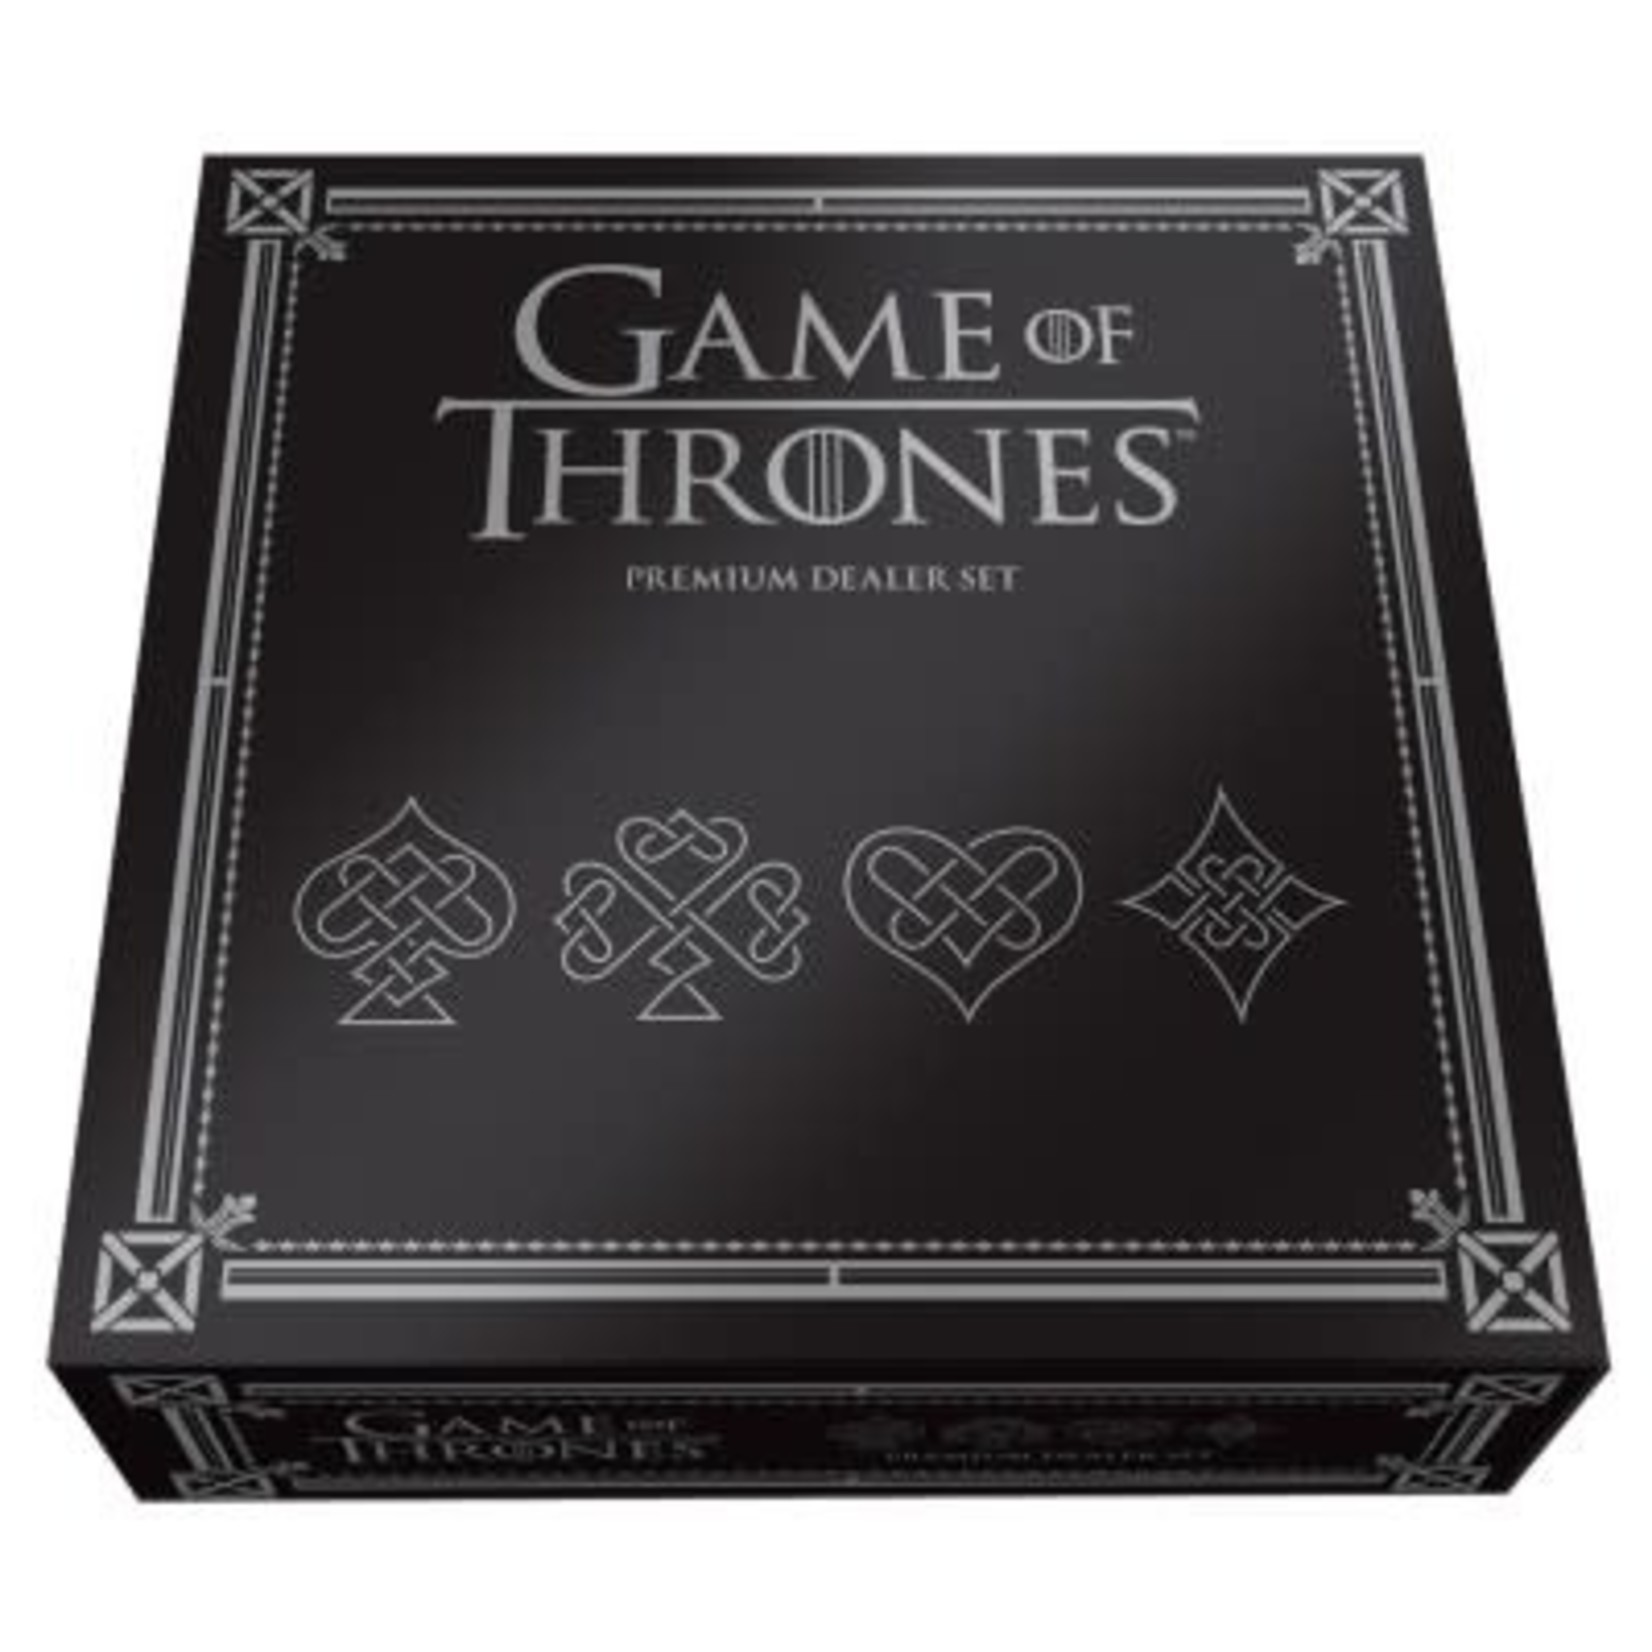 Game of Thrones Premium Dealer Set Card Set